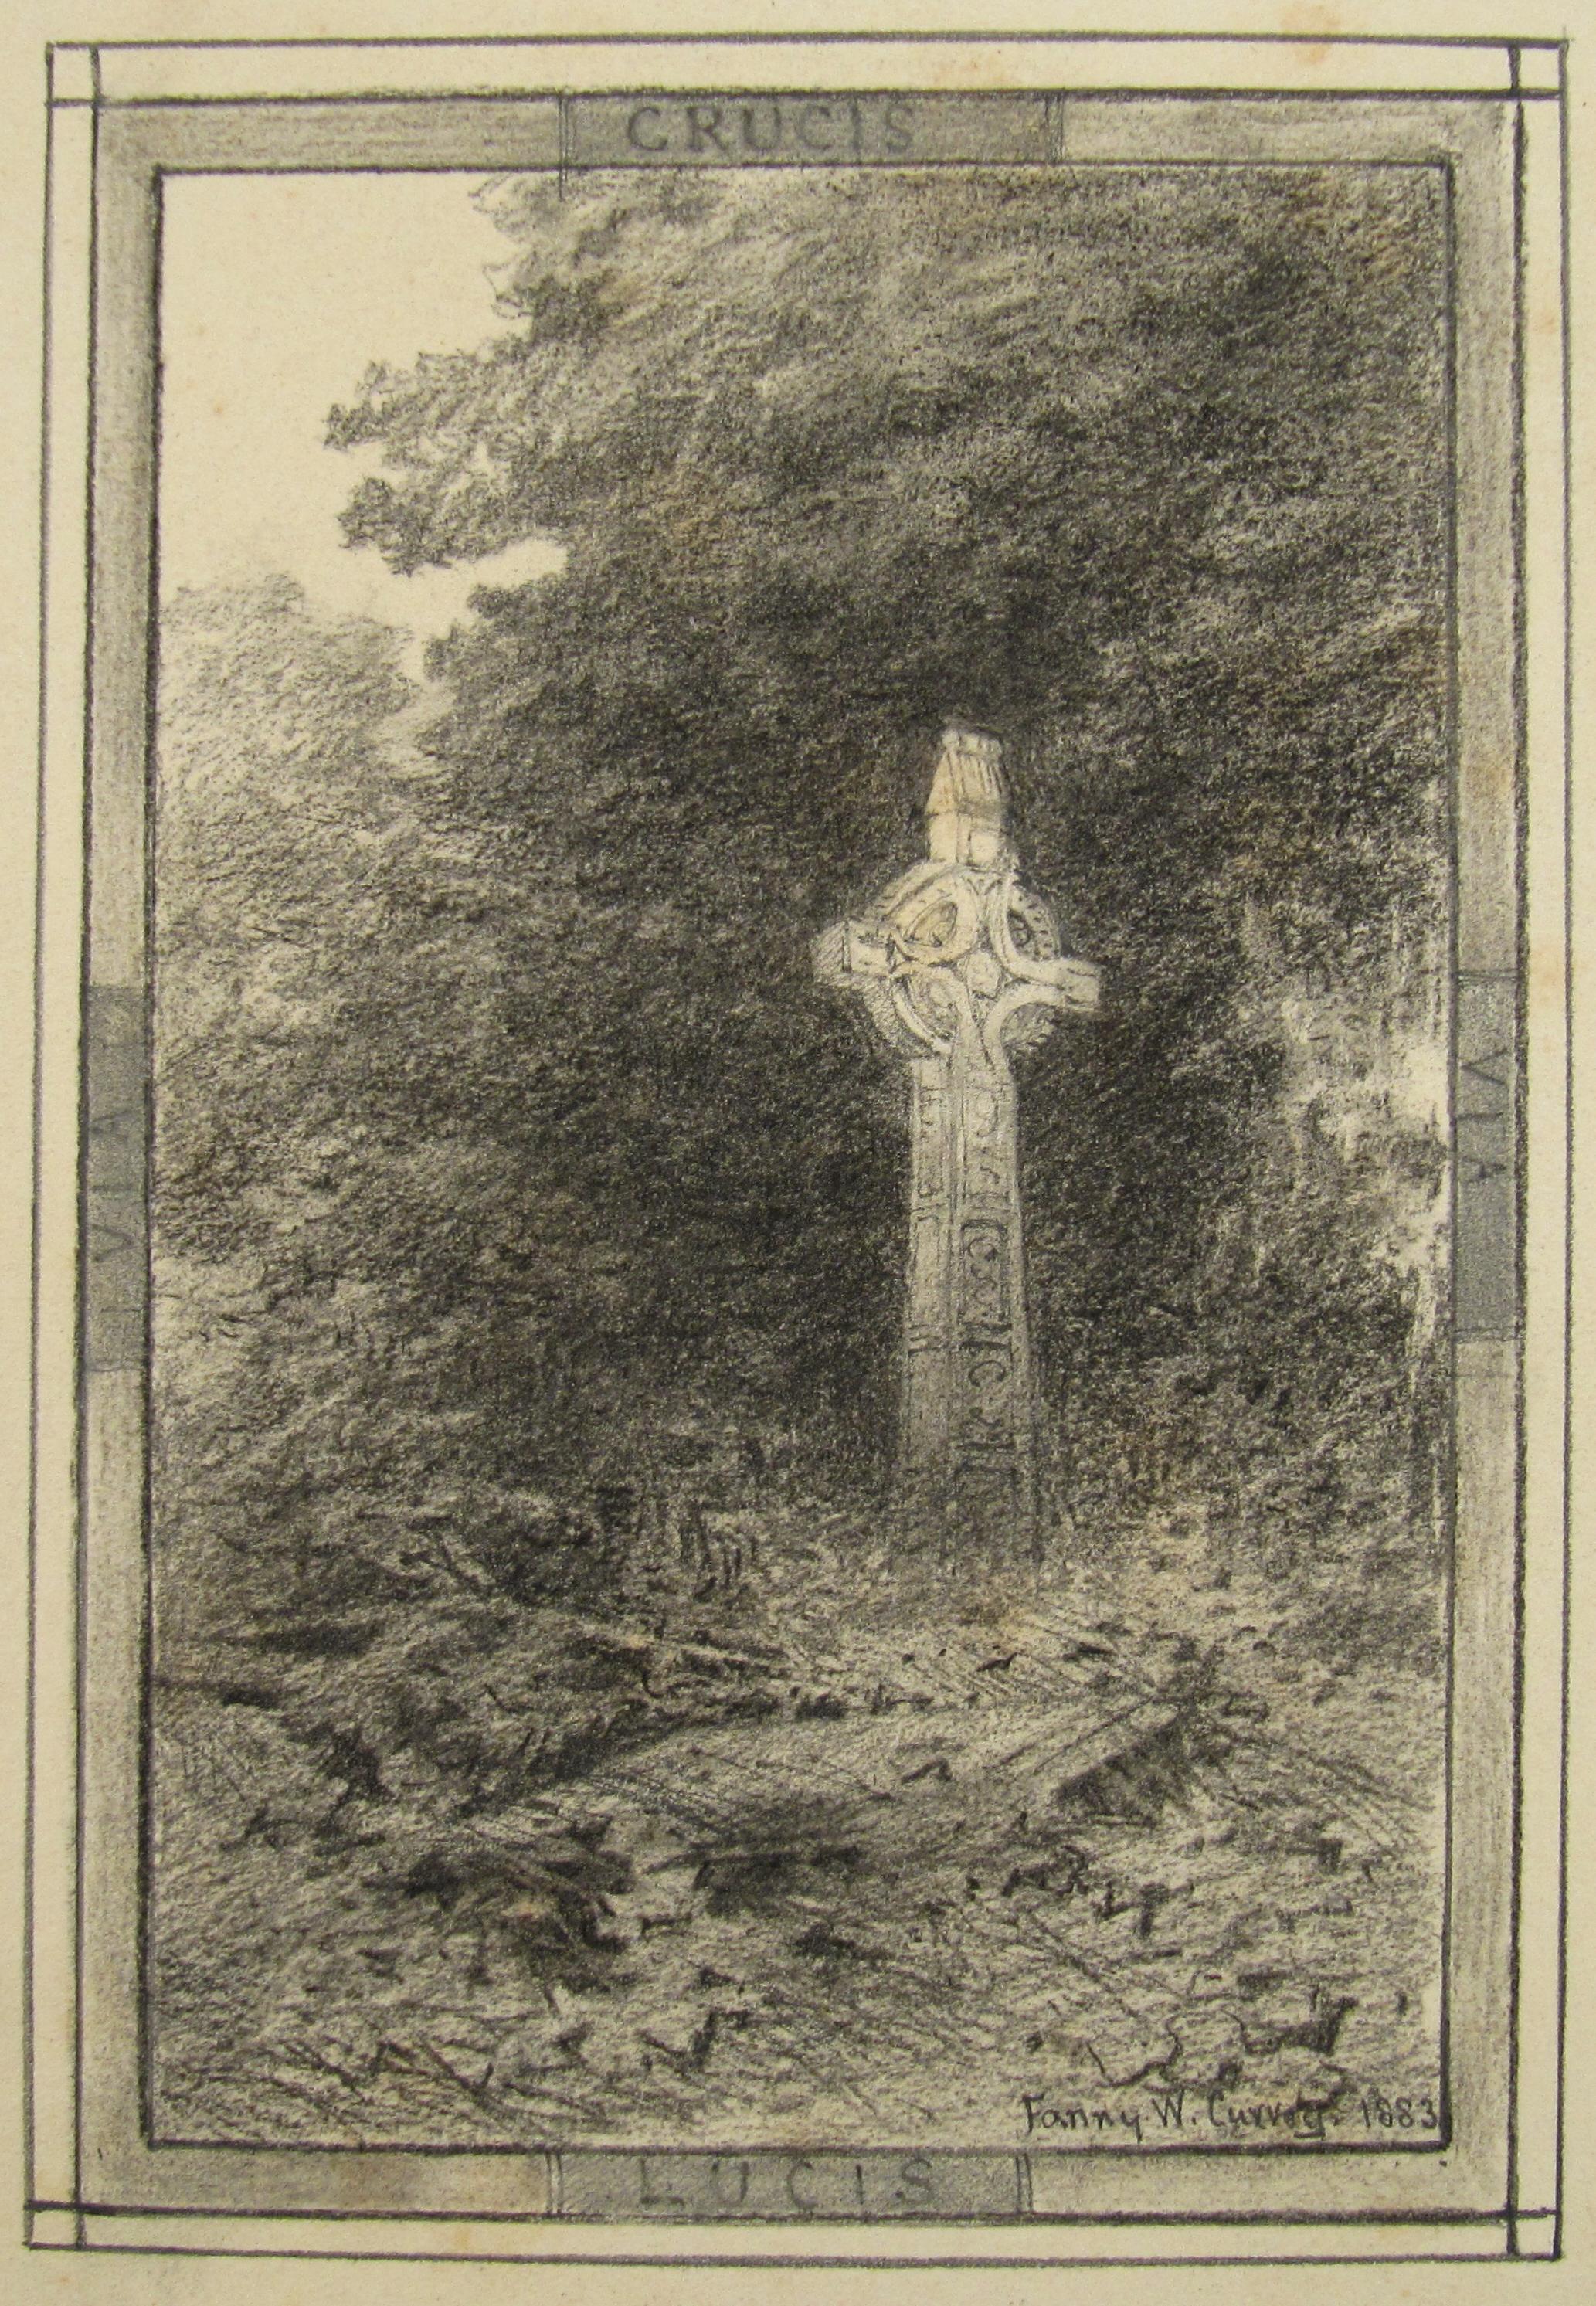 Fanny Wimot Currey Landscape Art – Fanny W. Currey ( Irland) 19. Jahrhundert Zeichnung des Keltischen Kreuzes – Via Crucis Via Lucis